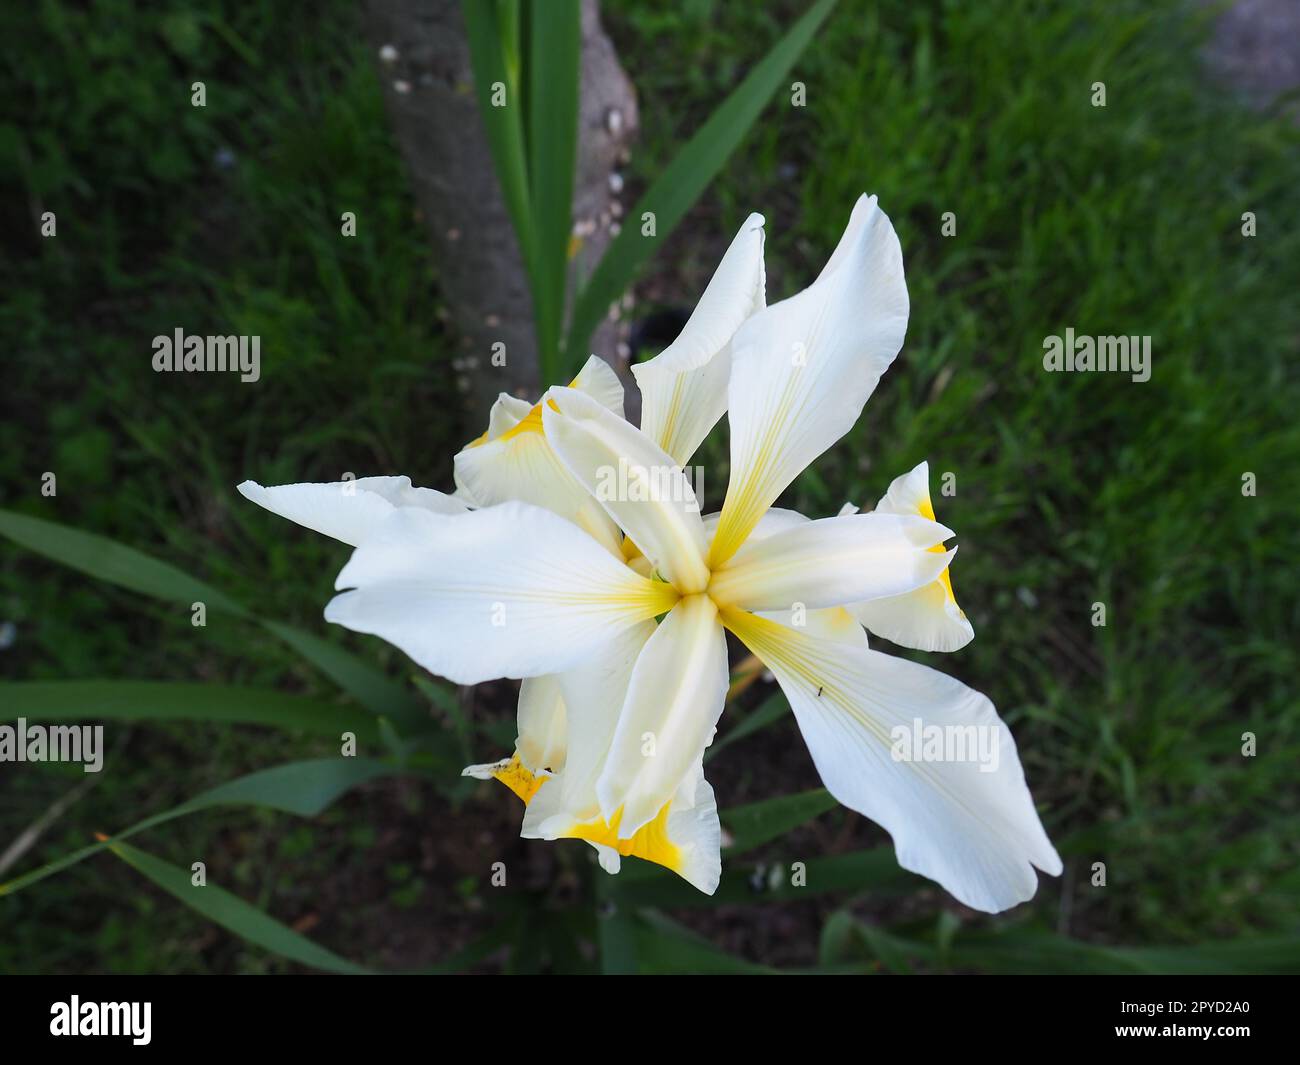 Iris ist eine Gattung mehrjähriger Rhizome der Iris-Familie. Ein Zierkraut mit großen, leuchtenden Blumen. Anmutige, zarte Blume von weißer Farbe mit gelben Adern. Grüne Leaves im Hintergrund Stockfoto